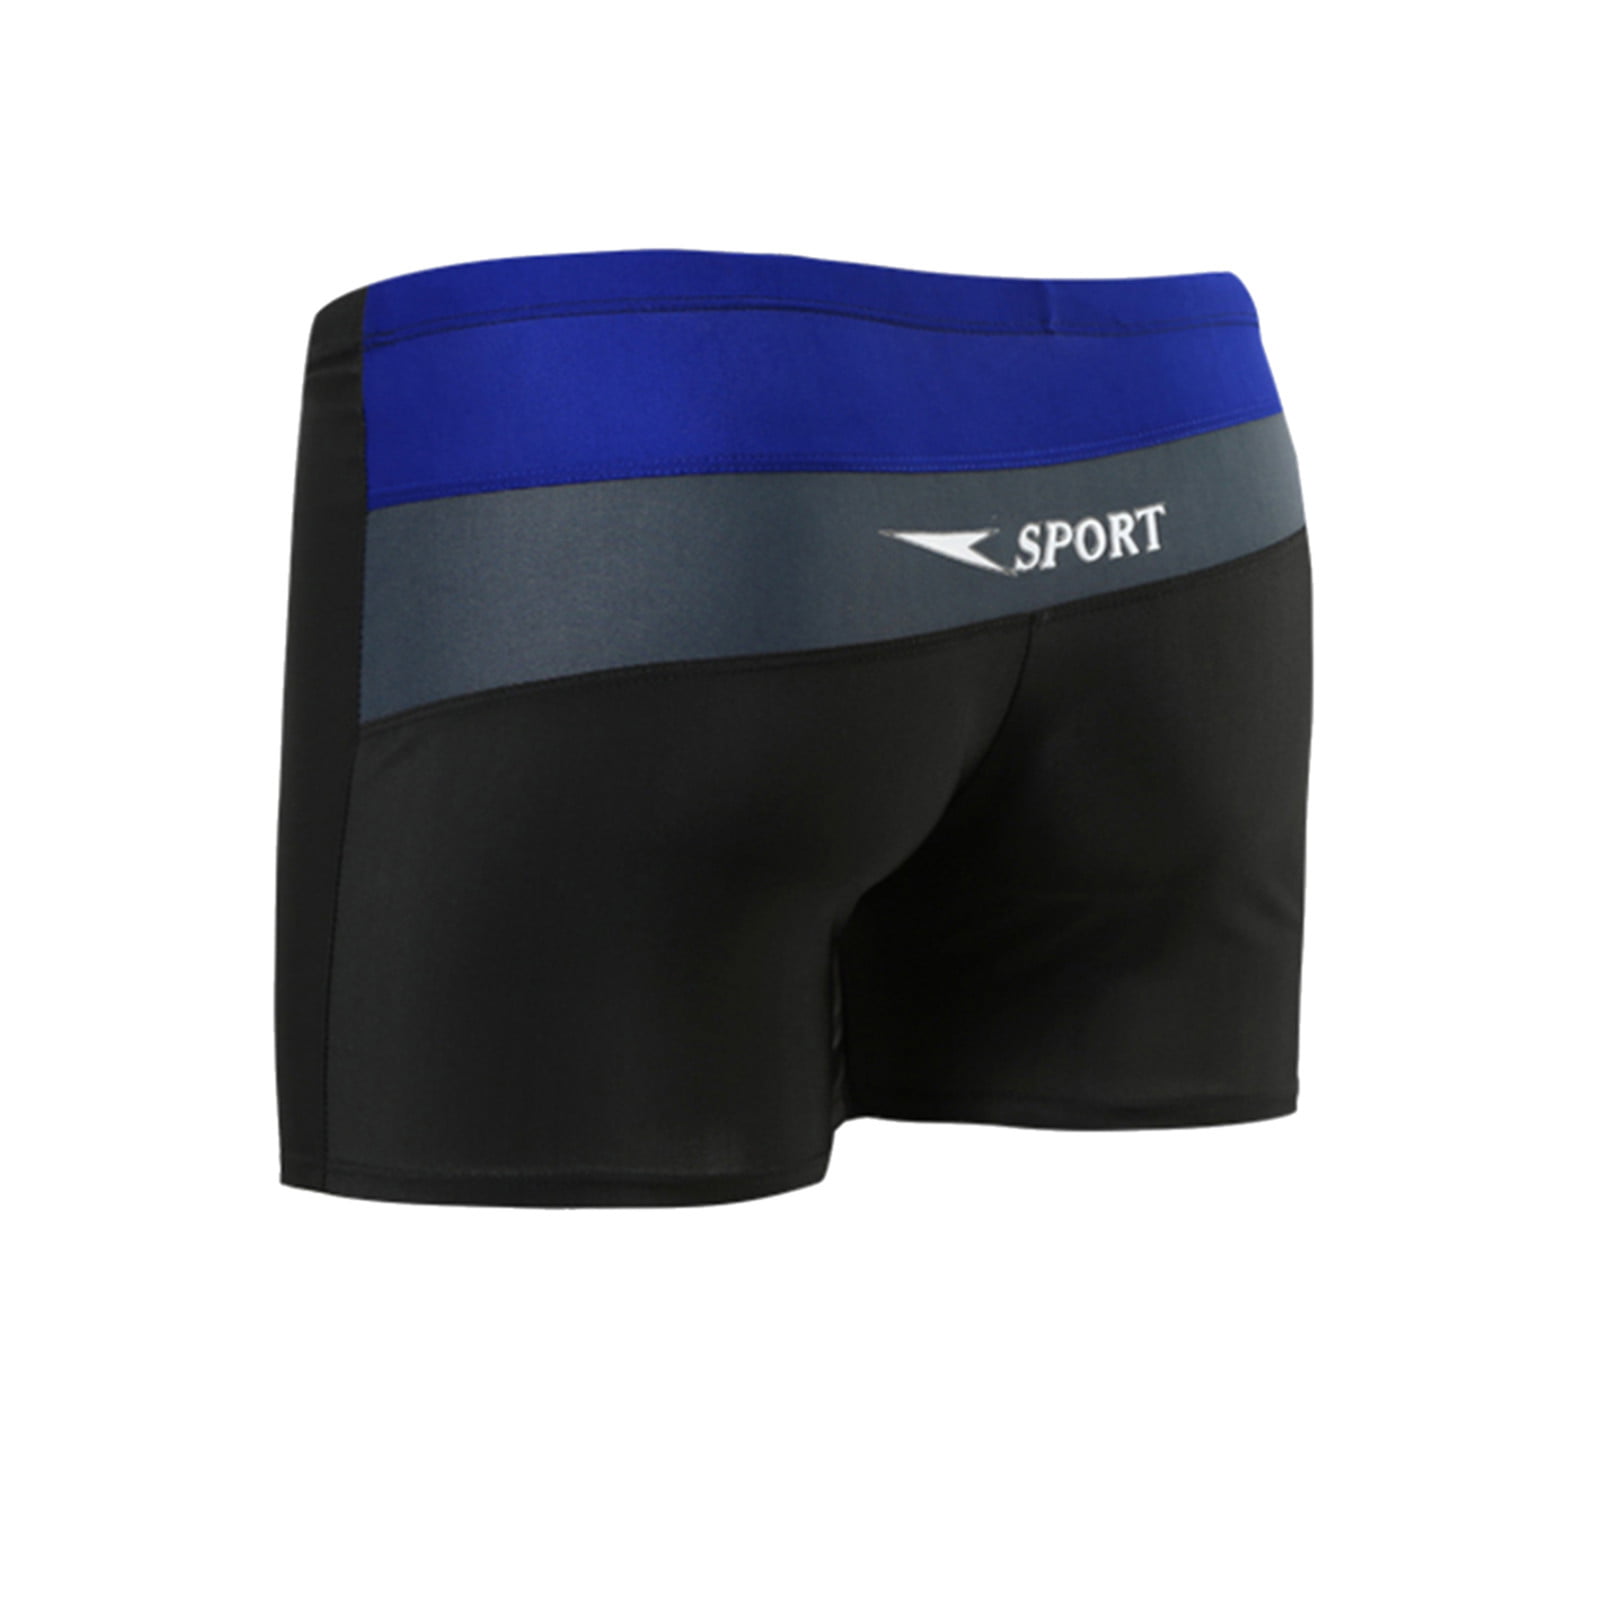 Printed Nylon Swim Shorts - Ready-to-Wear 1ABJJQ